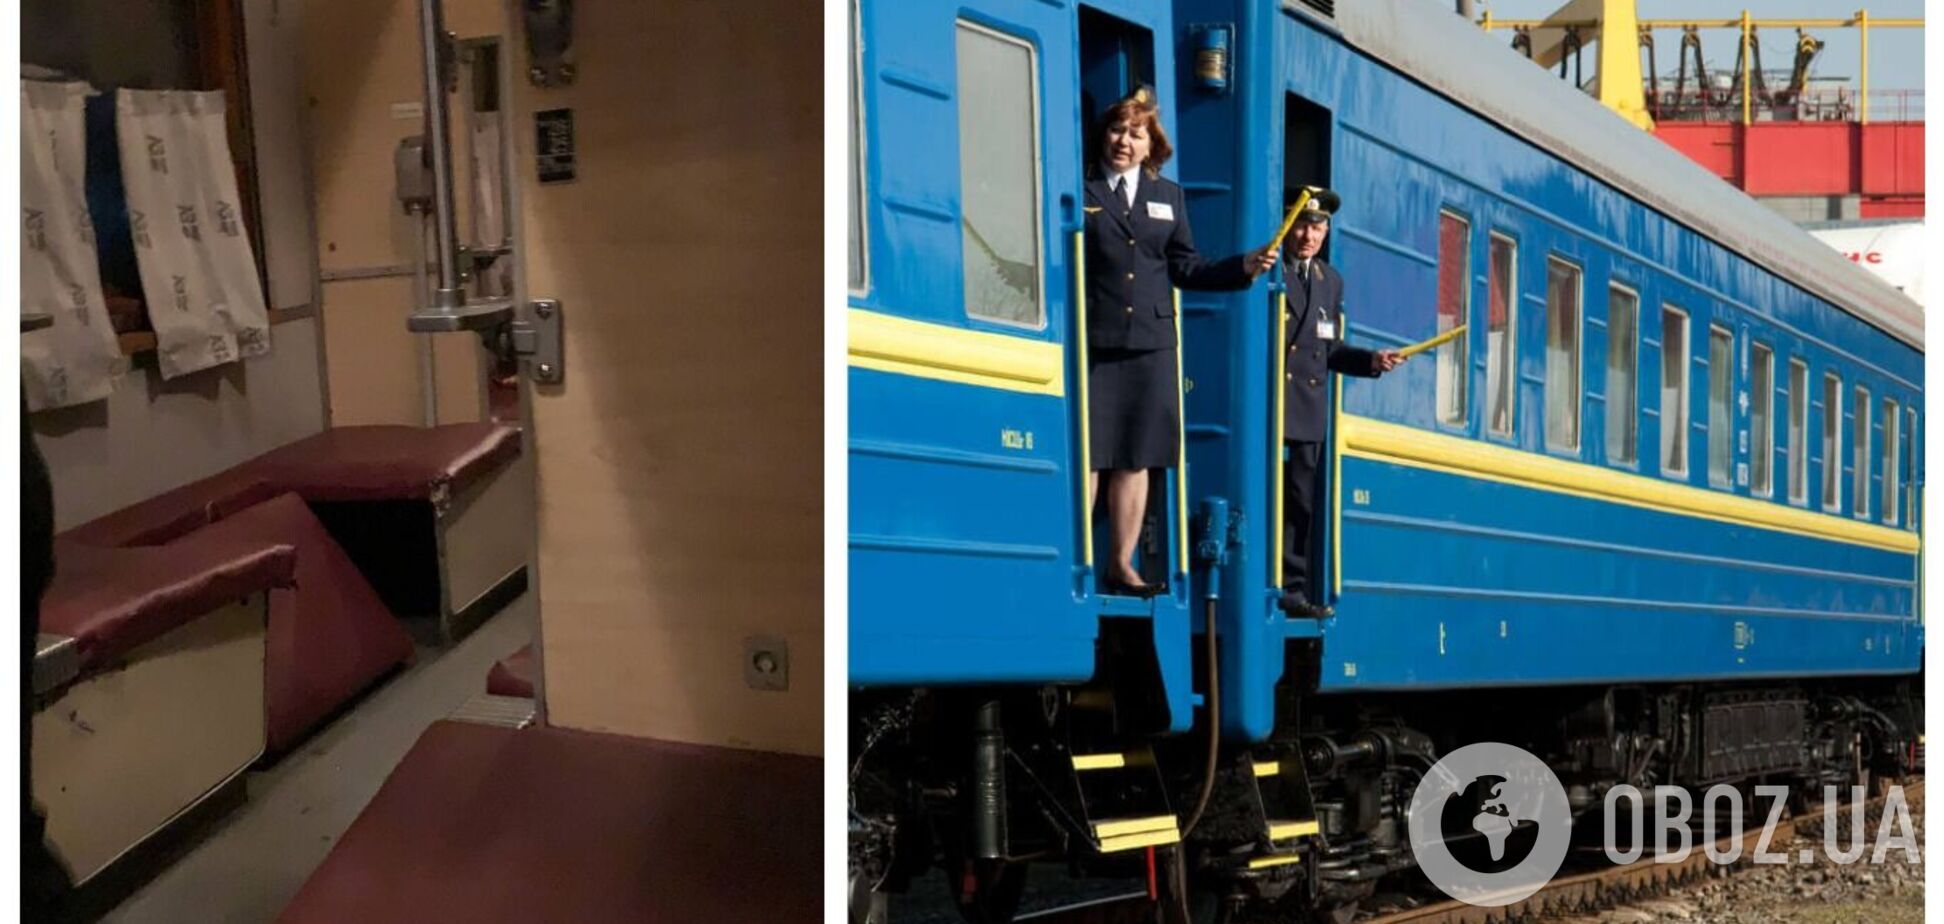 Українці поскаржилися на умови поїзда Одеса – Чернівці: полиці відвалюються. Фото і відео